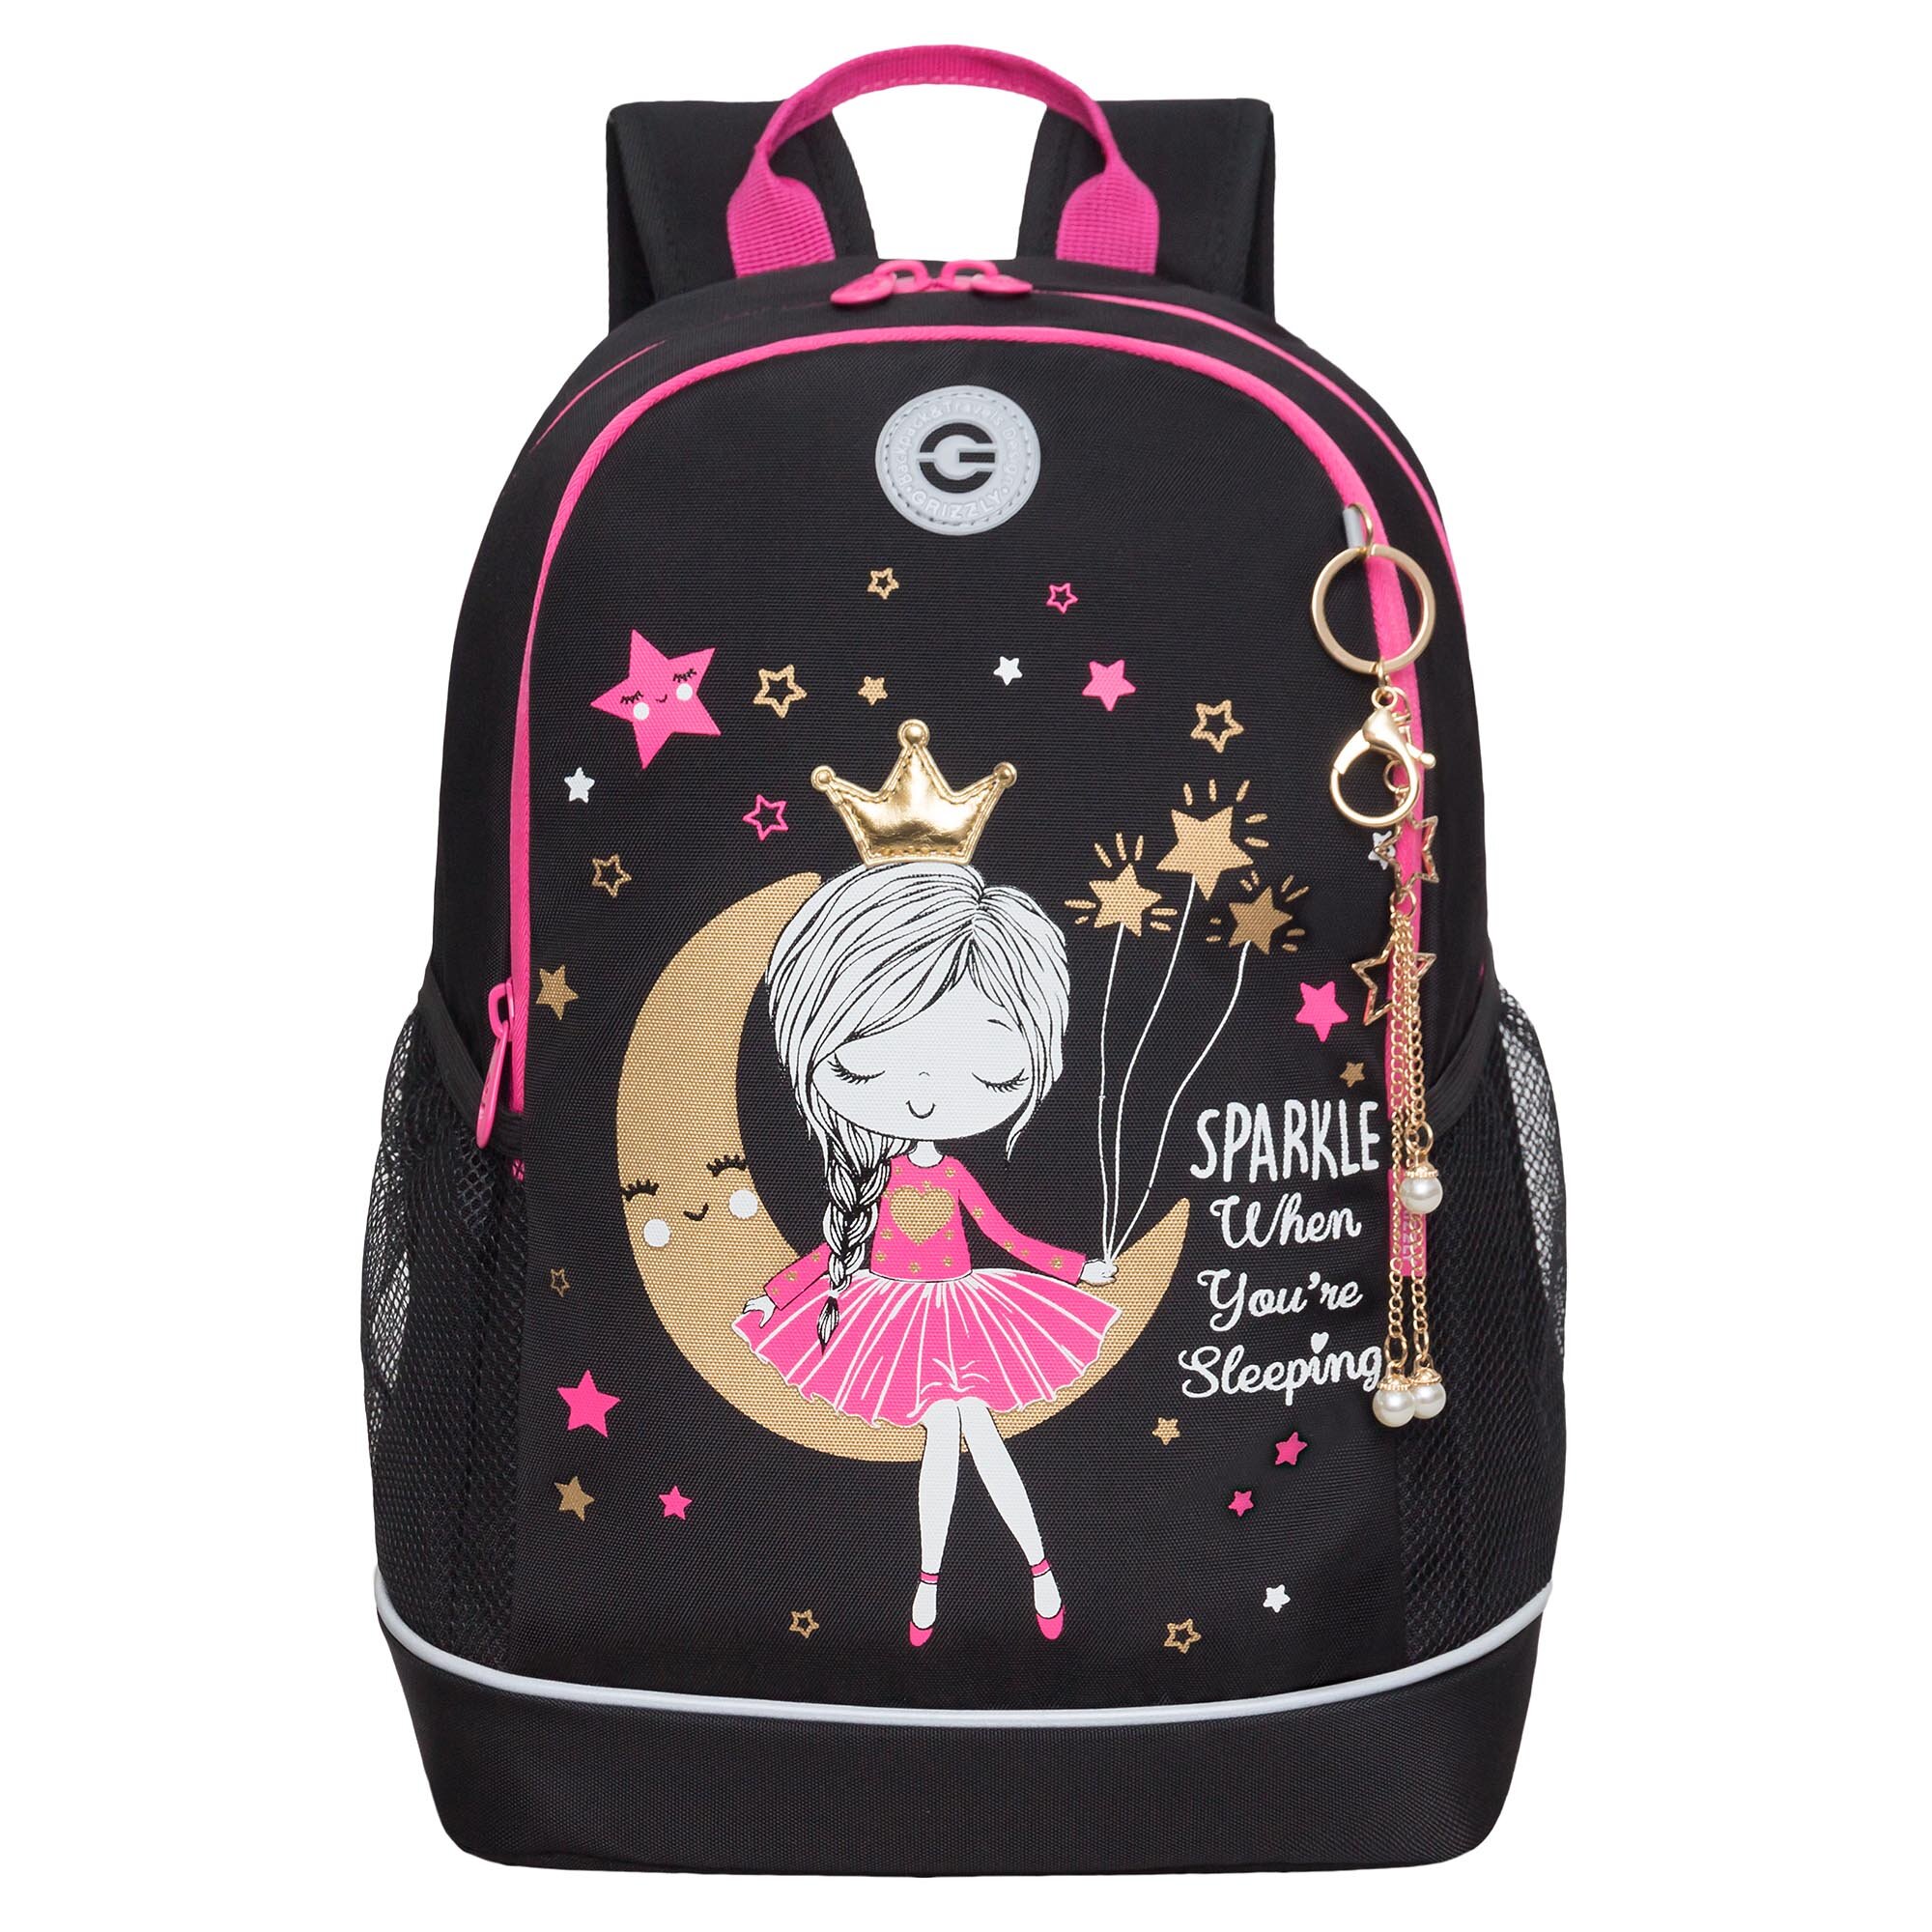 Рюкзак школьный GRIZZLY с карманом для ноутбука 13", жесткой спинкой, двумя отделениями, для девочки RG-463-1/2